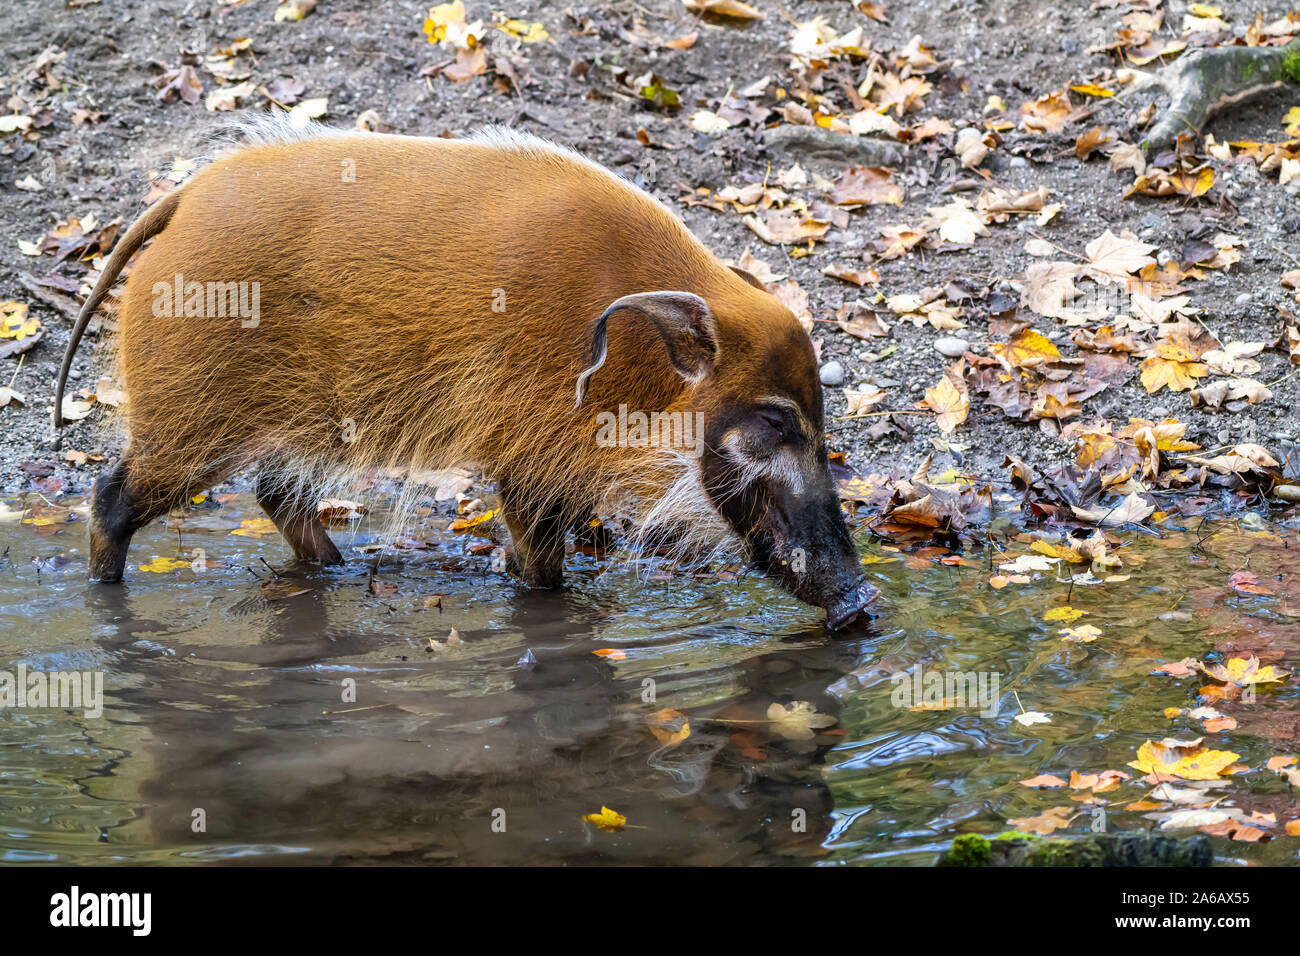 Red River hog, Potamochoerus porcus, noto anche come il maiale bush. Questo maiale ha un acuto senso dell'olfatto per individuare cibo sottoterra. Foto Stock